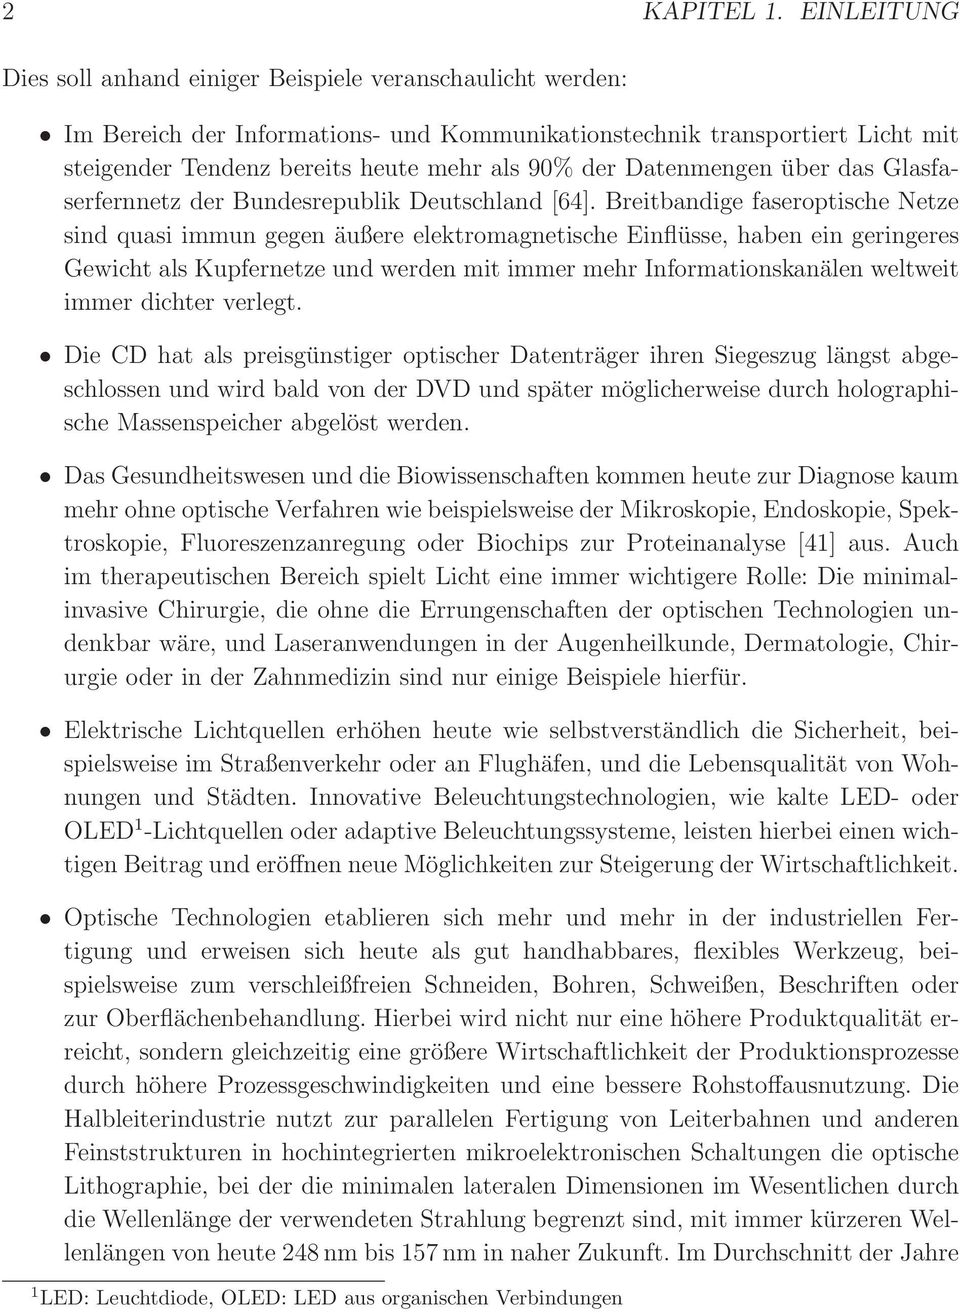 Datenmengen über das Glasfaserfernnetz der Bundesrepublik Deutschland [64].